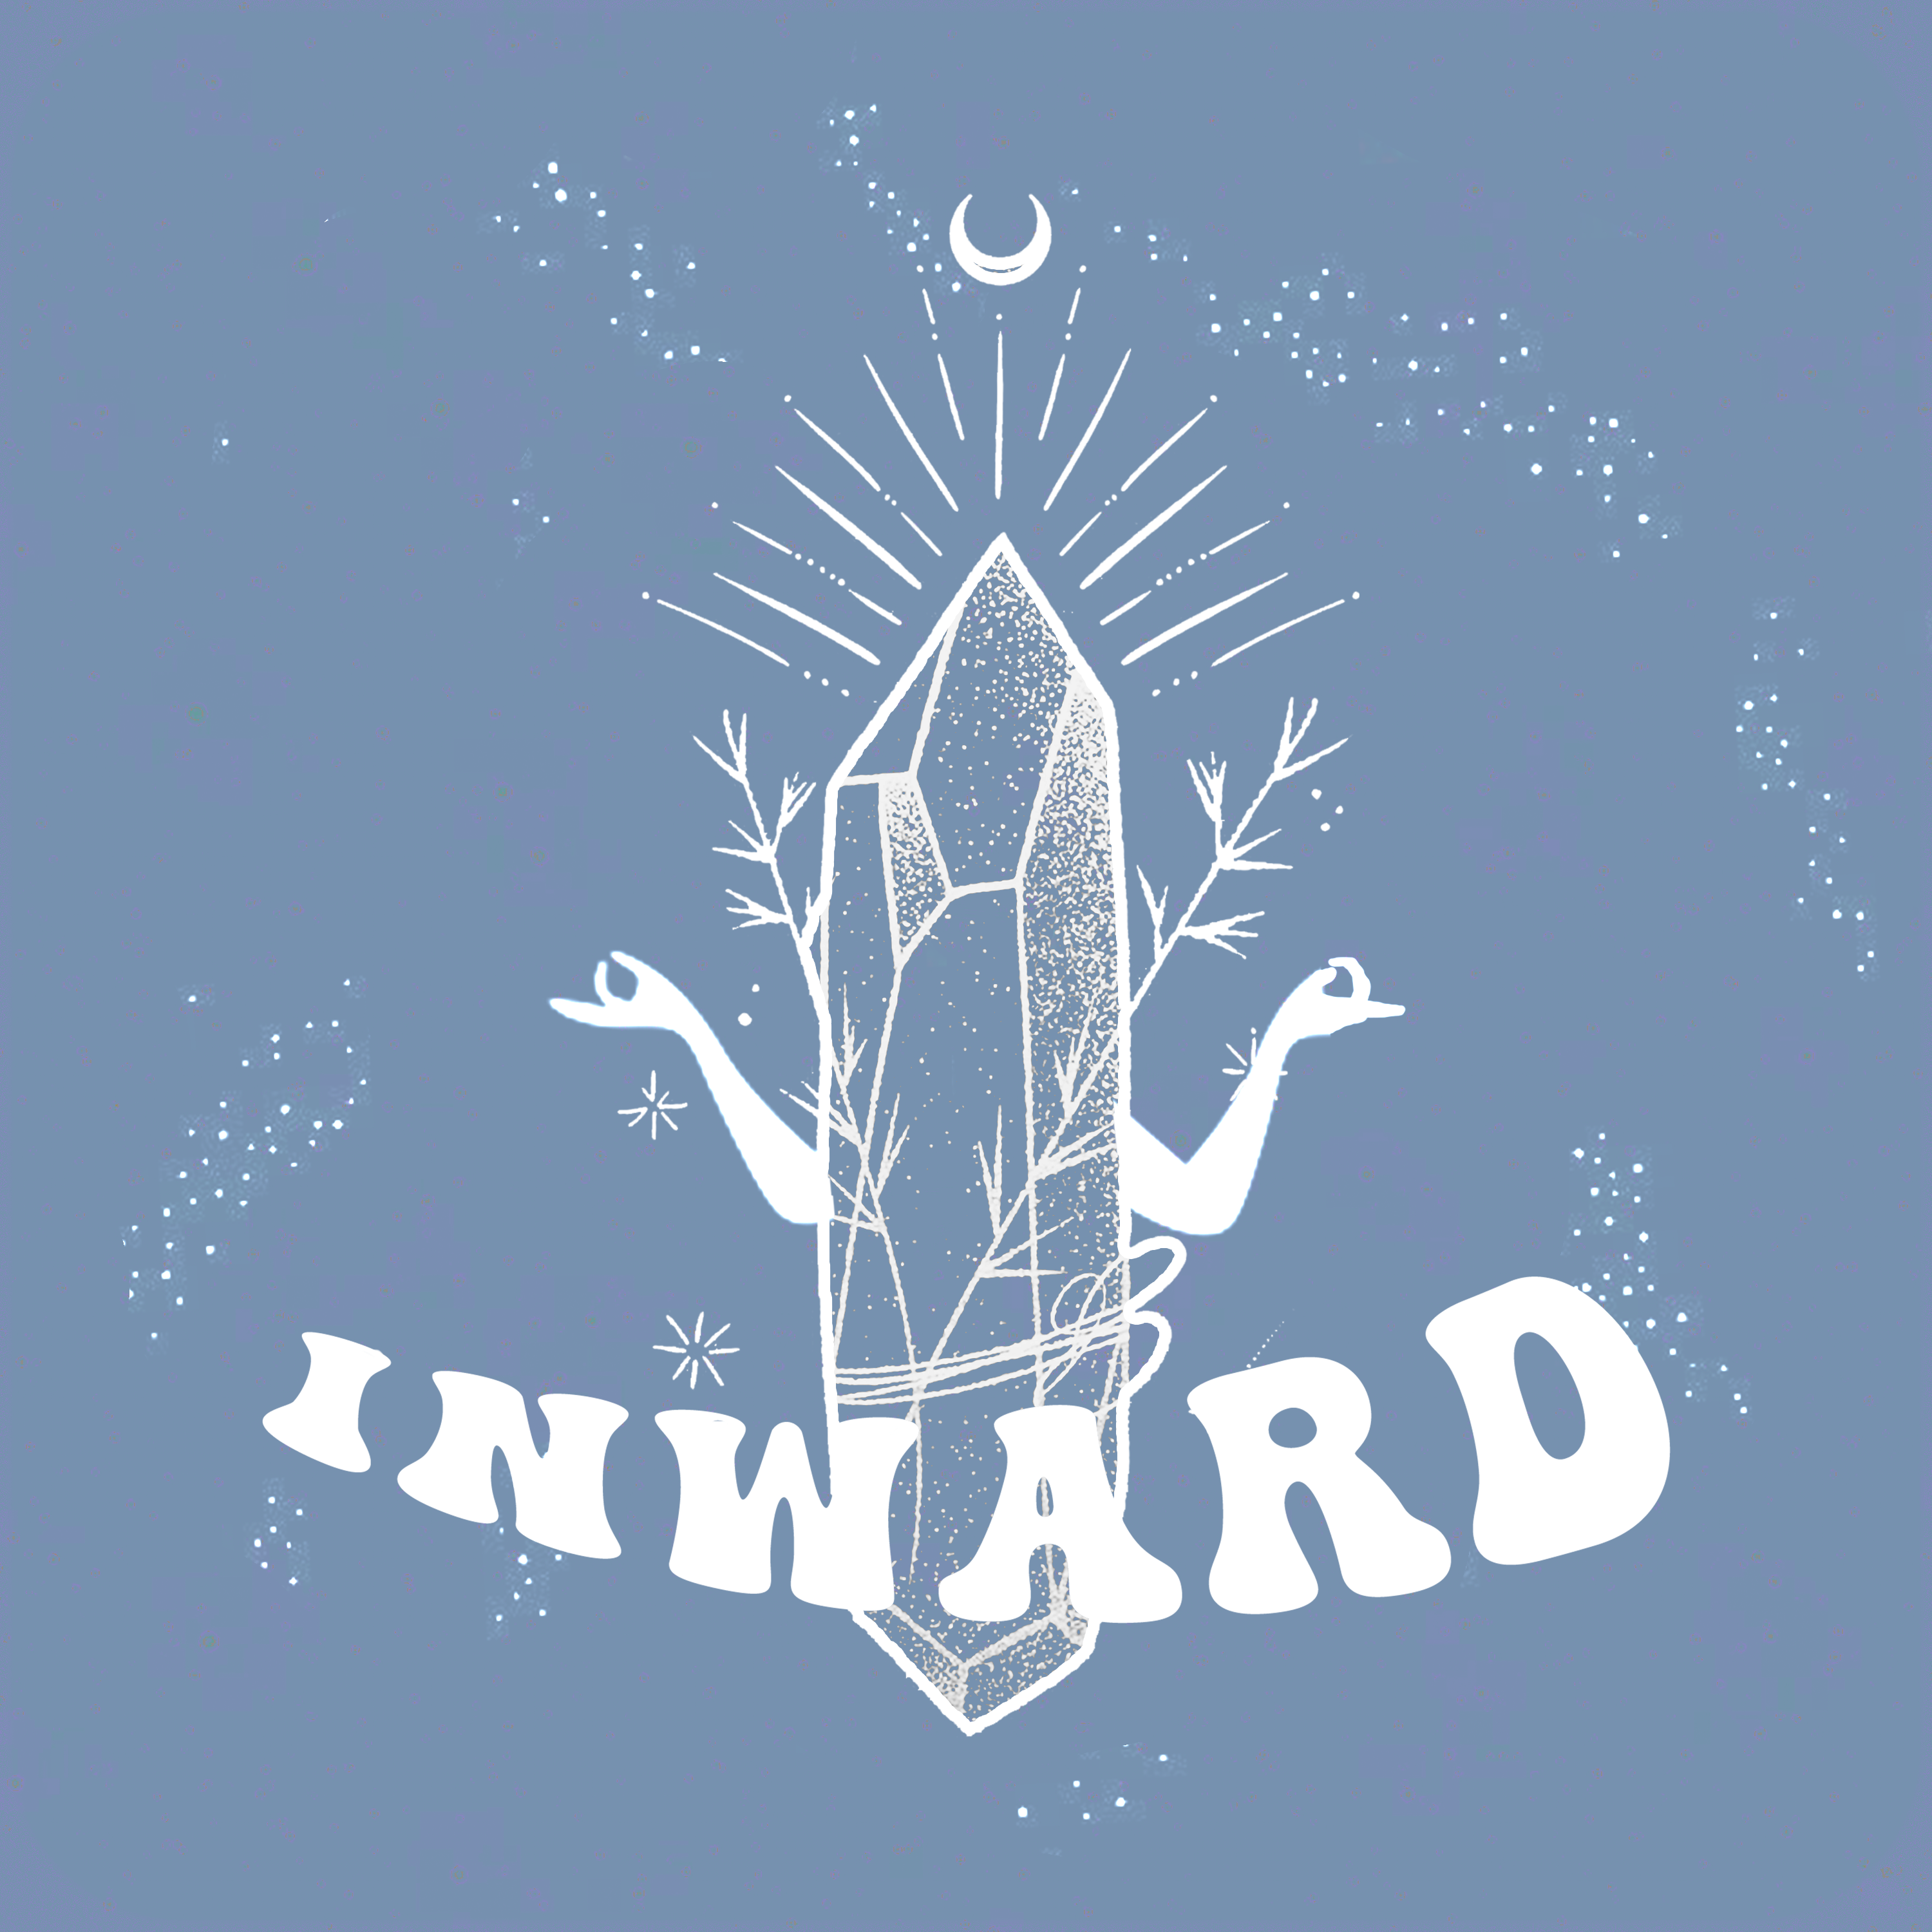 Inward